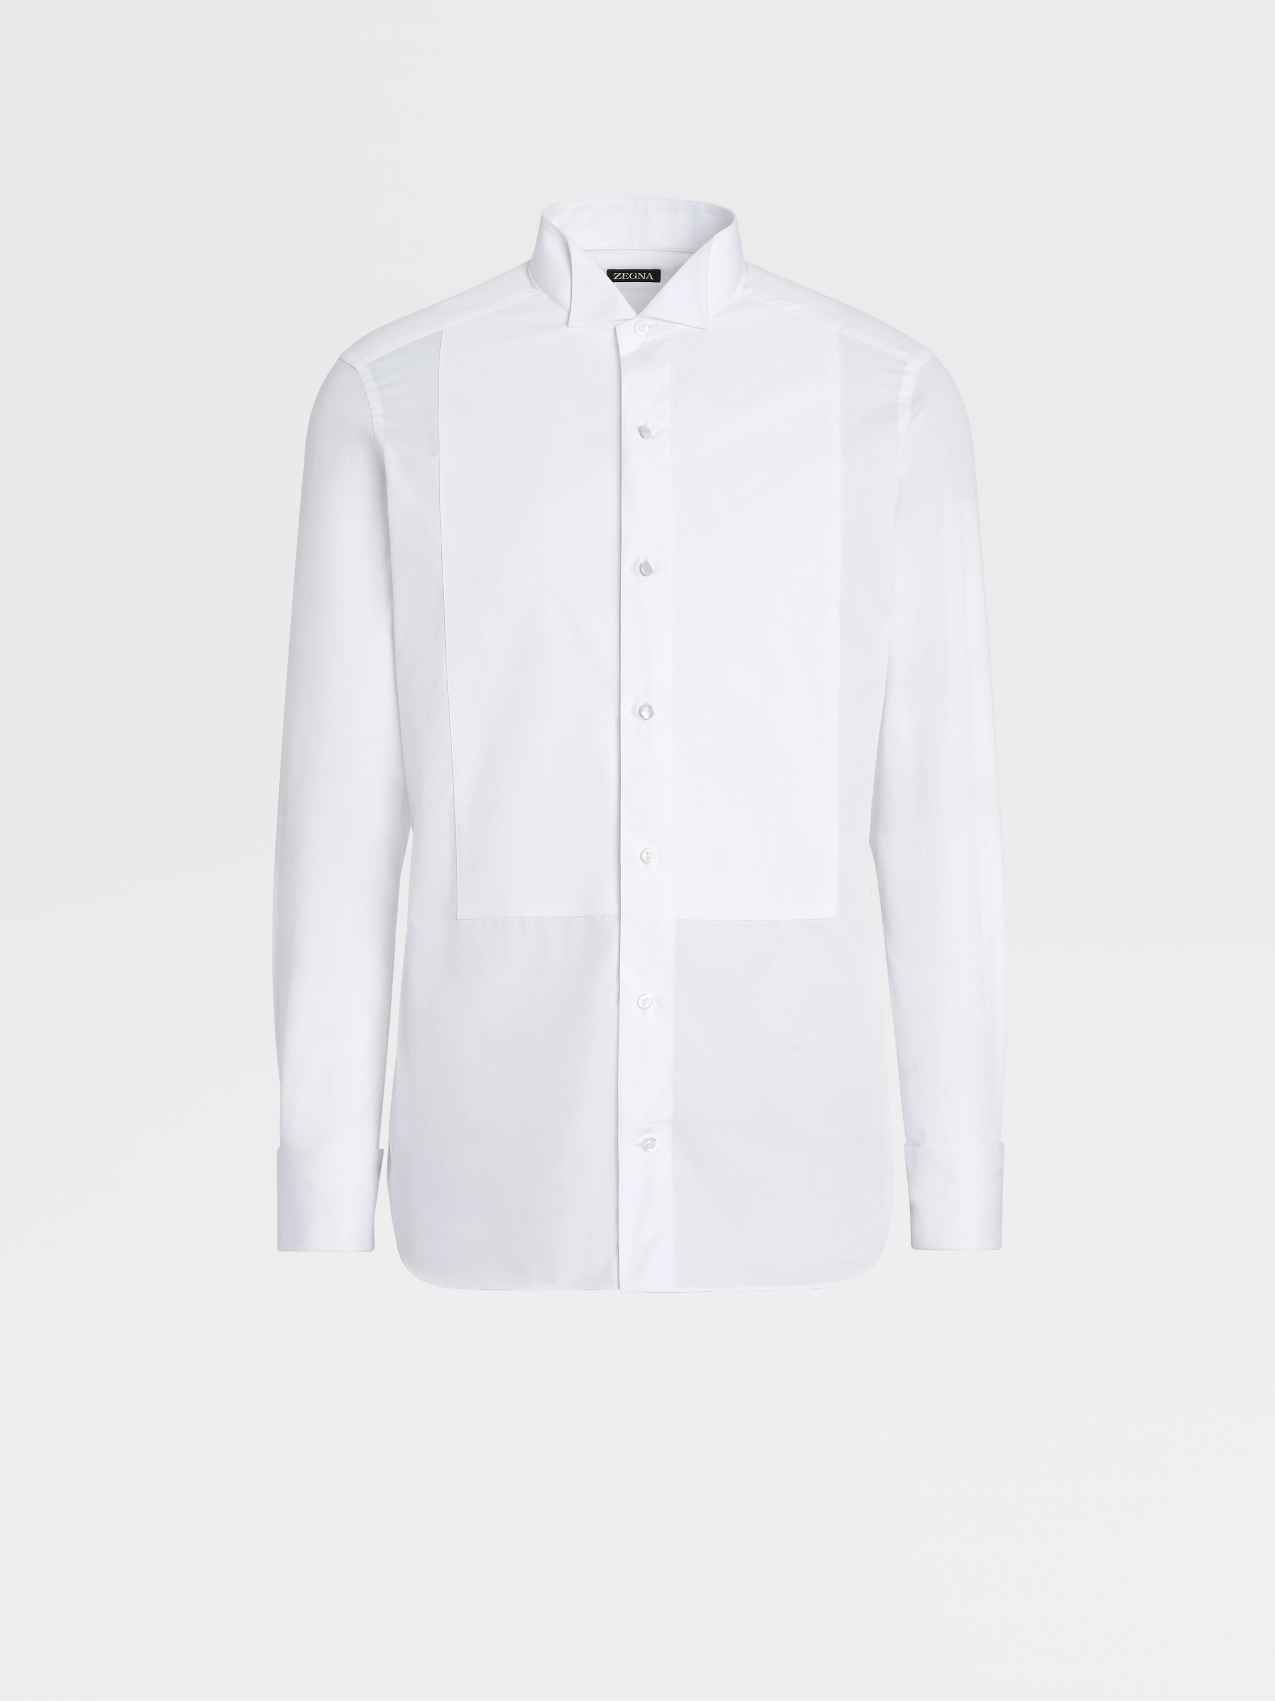 White Cotton Tuxedo Shirt